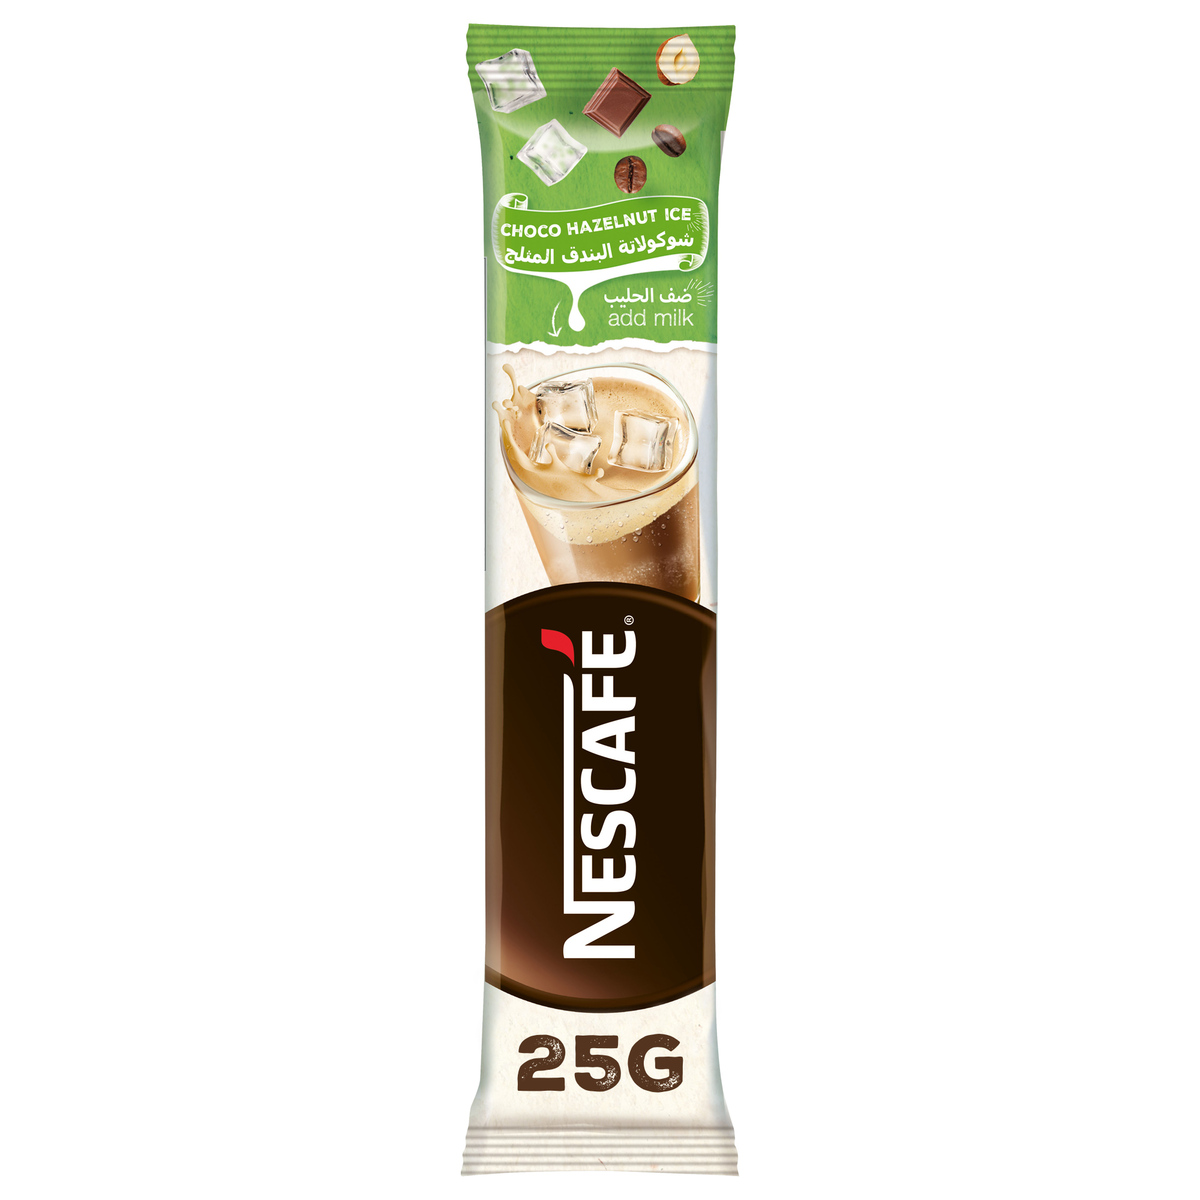 Nescafe Choco Hazelnut Ice 10 x 25g